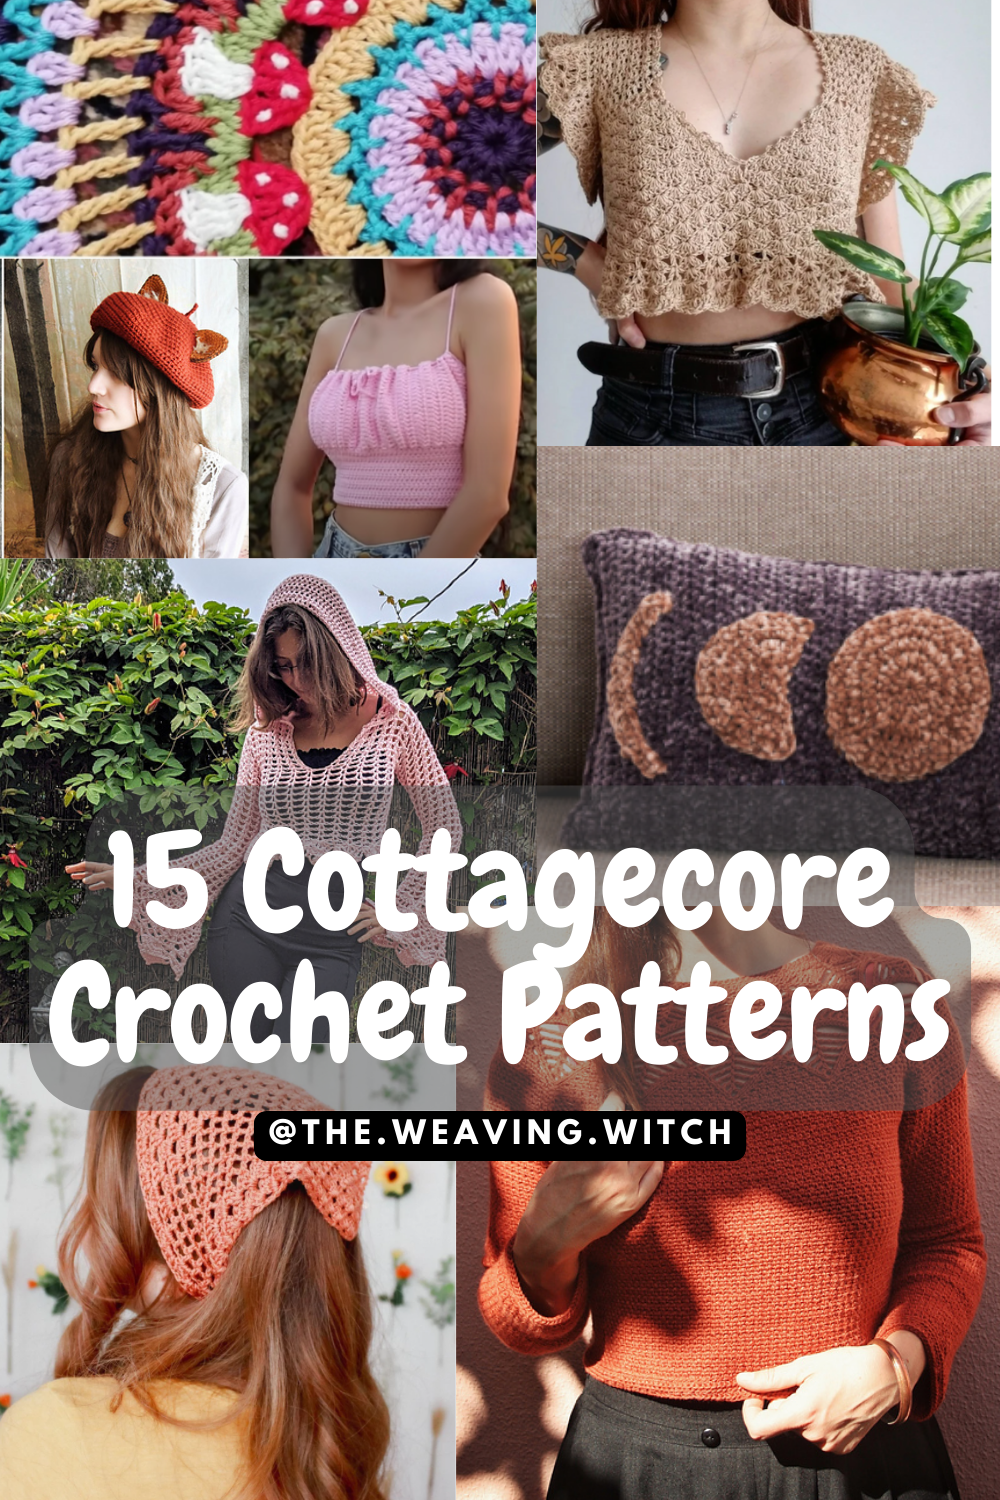 15 Easy Crochet Patterns for Beginners